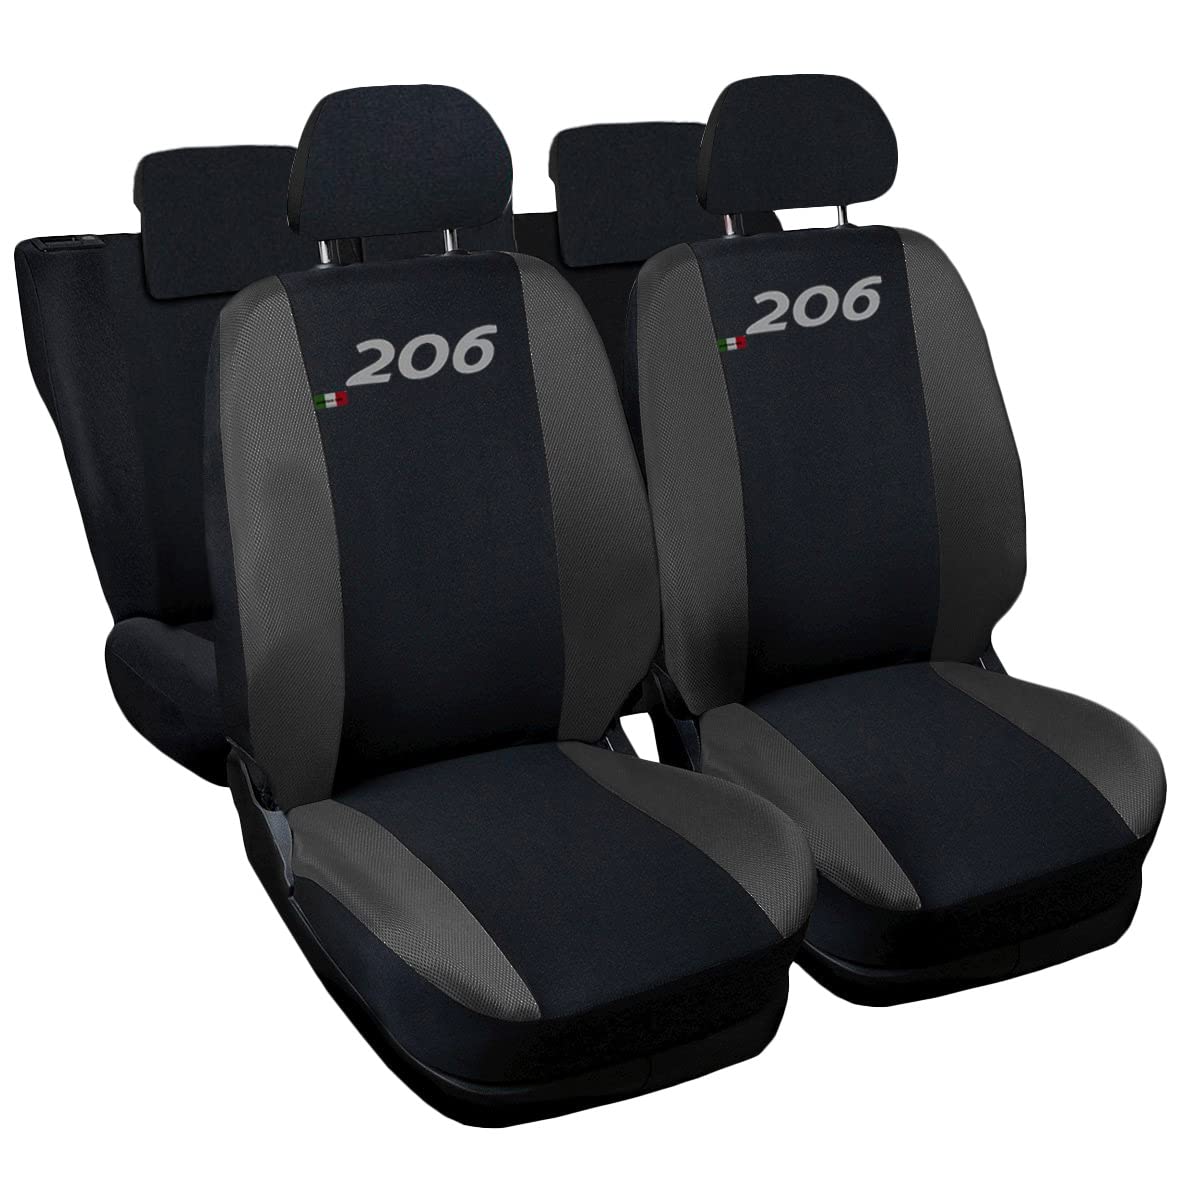 Lupex Shop Autositzbezüge kompatibel mit 206, Made in Italy, Polyestergewebe, kompletter Satz Vorder- und Rücksitze (Schwarz - Dunkelgrau) von Lupex Shop